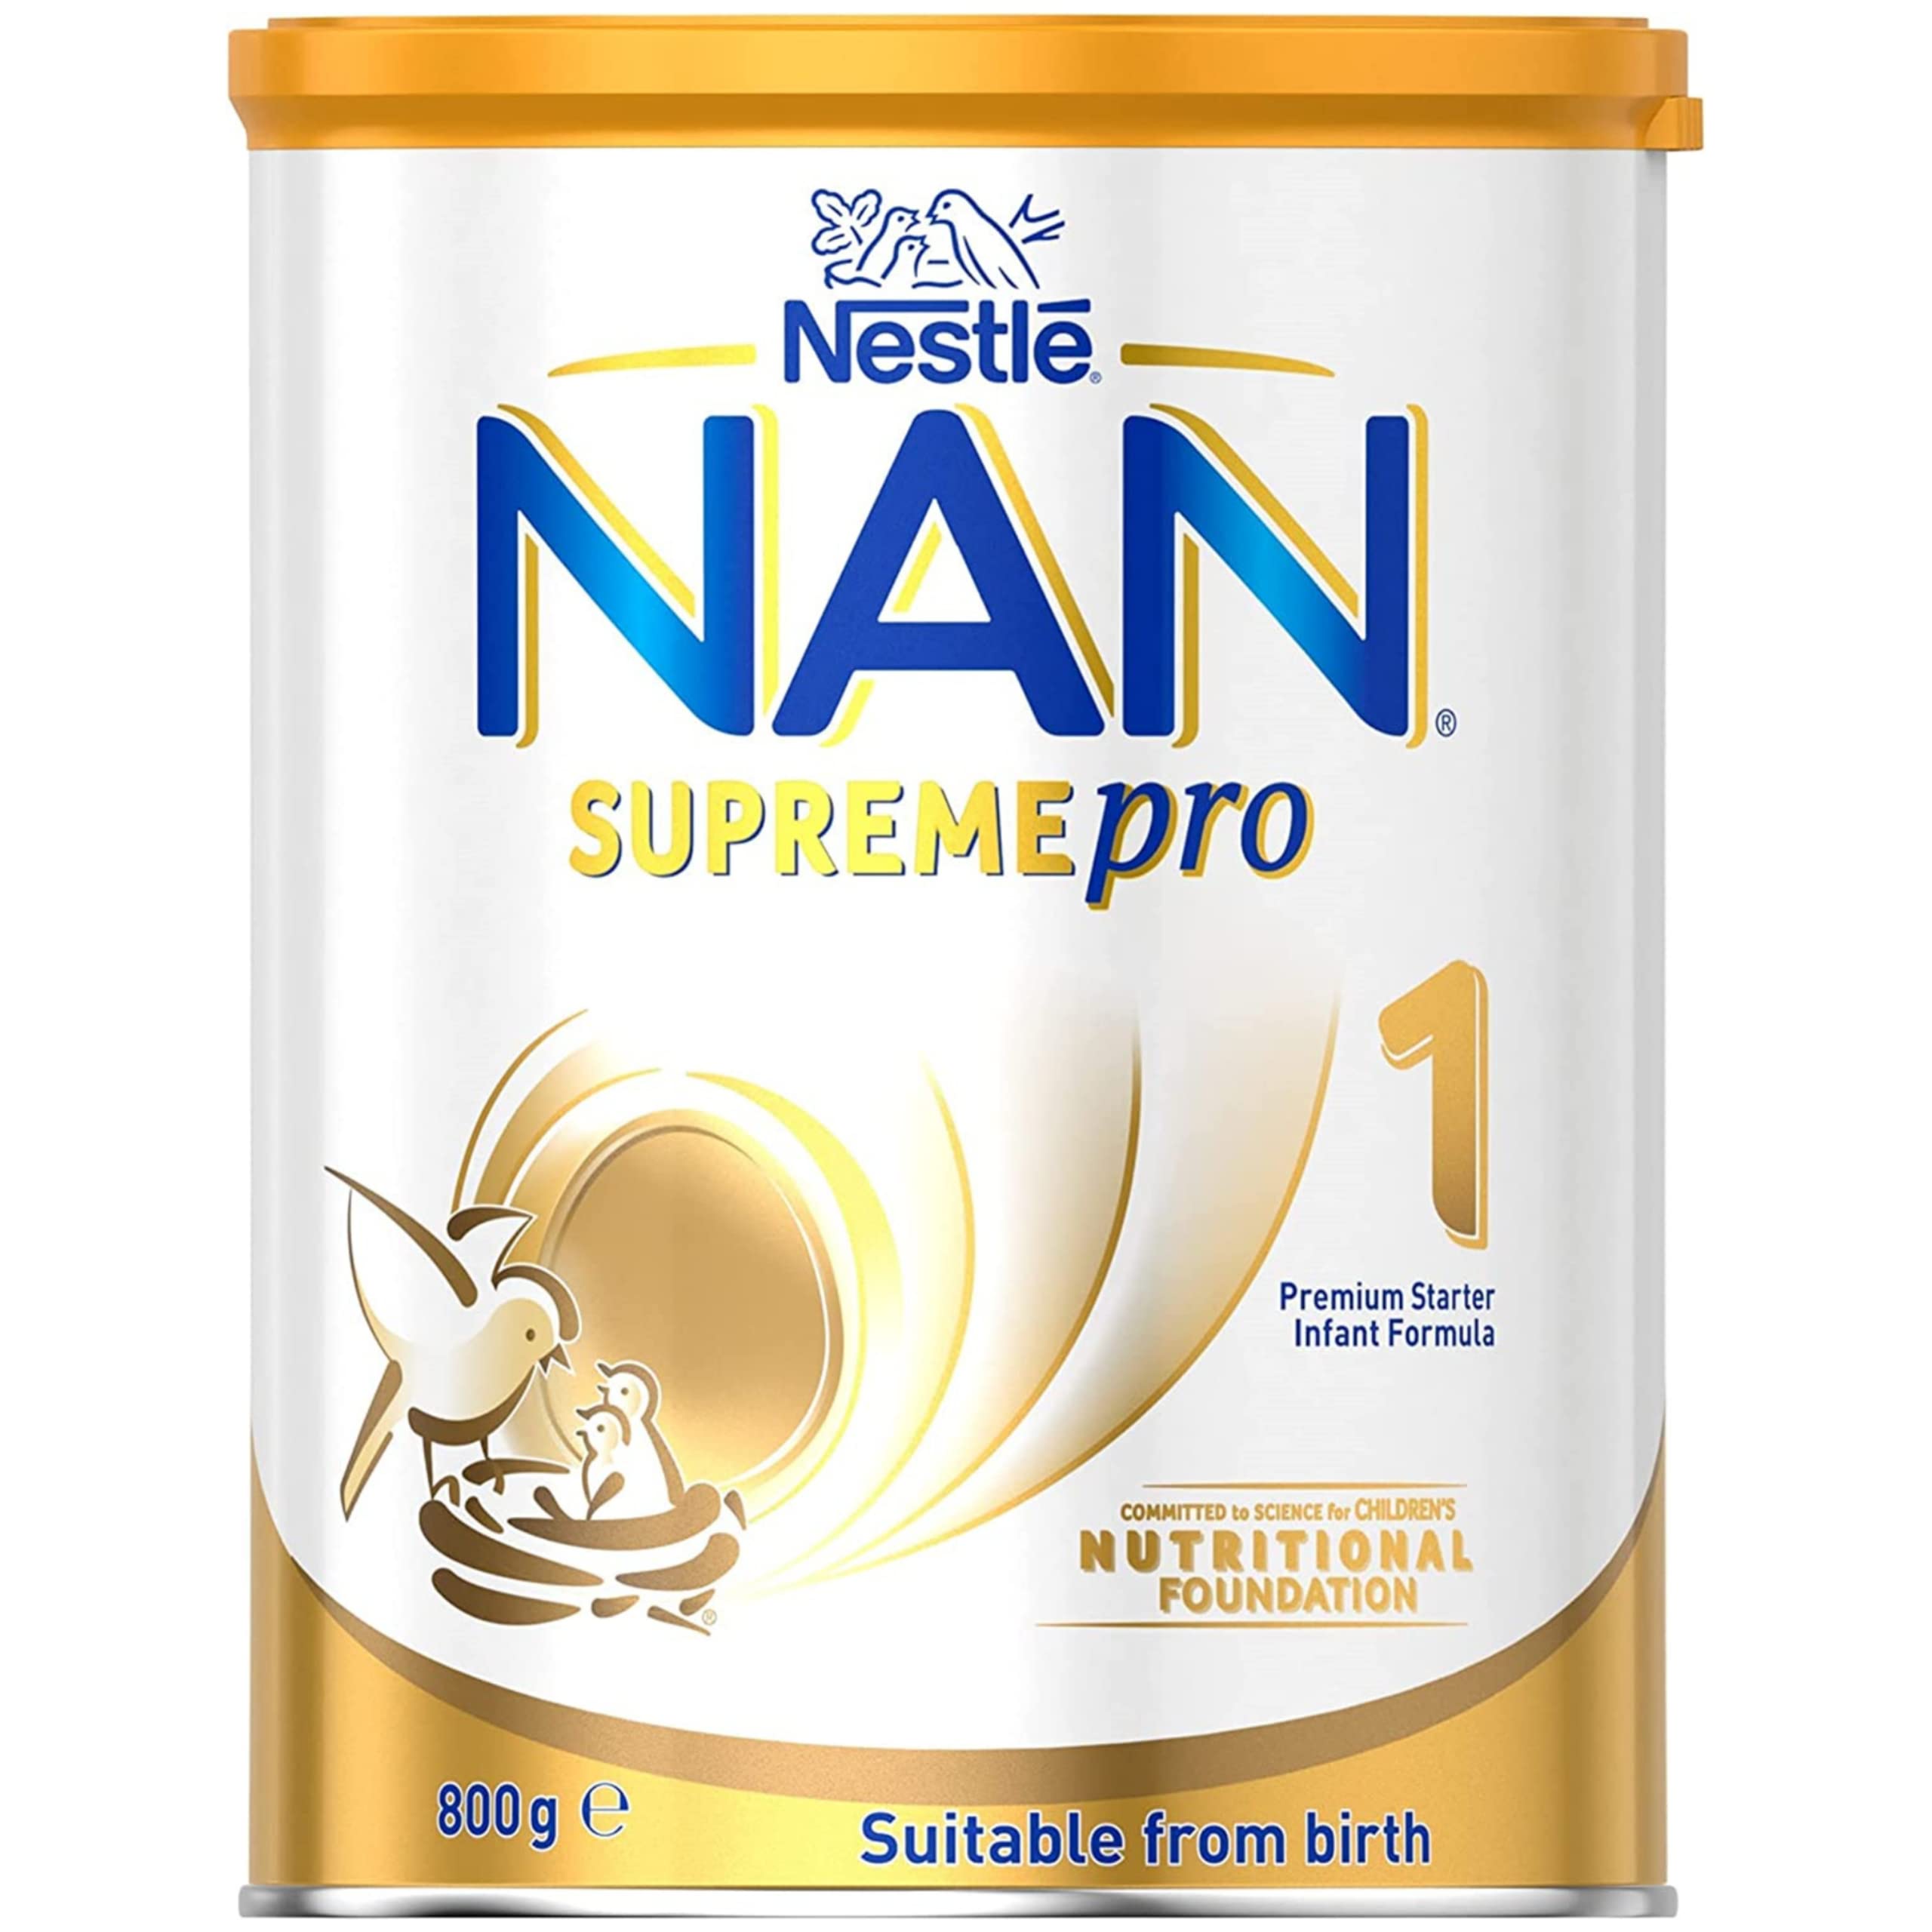 Nestlé NAN SUPREMEpro 1, Premium Baby Formula, Newborn to 12 Months – 800g